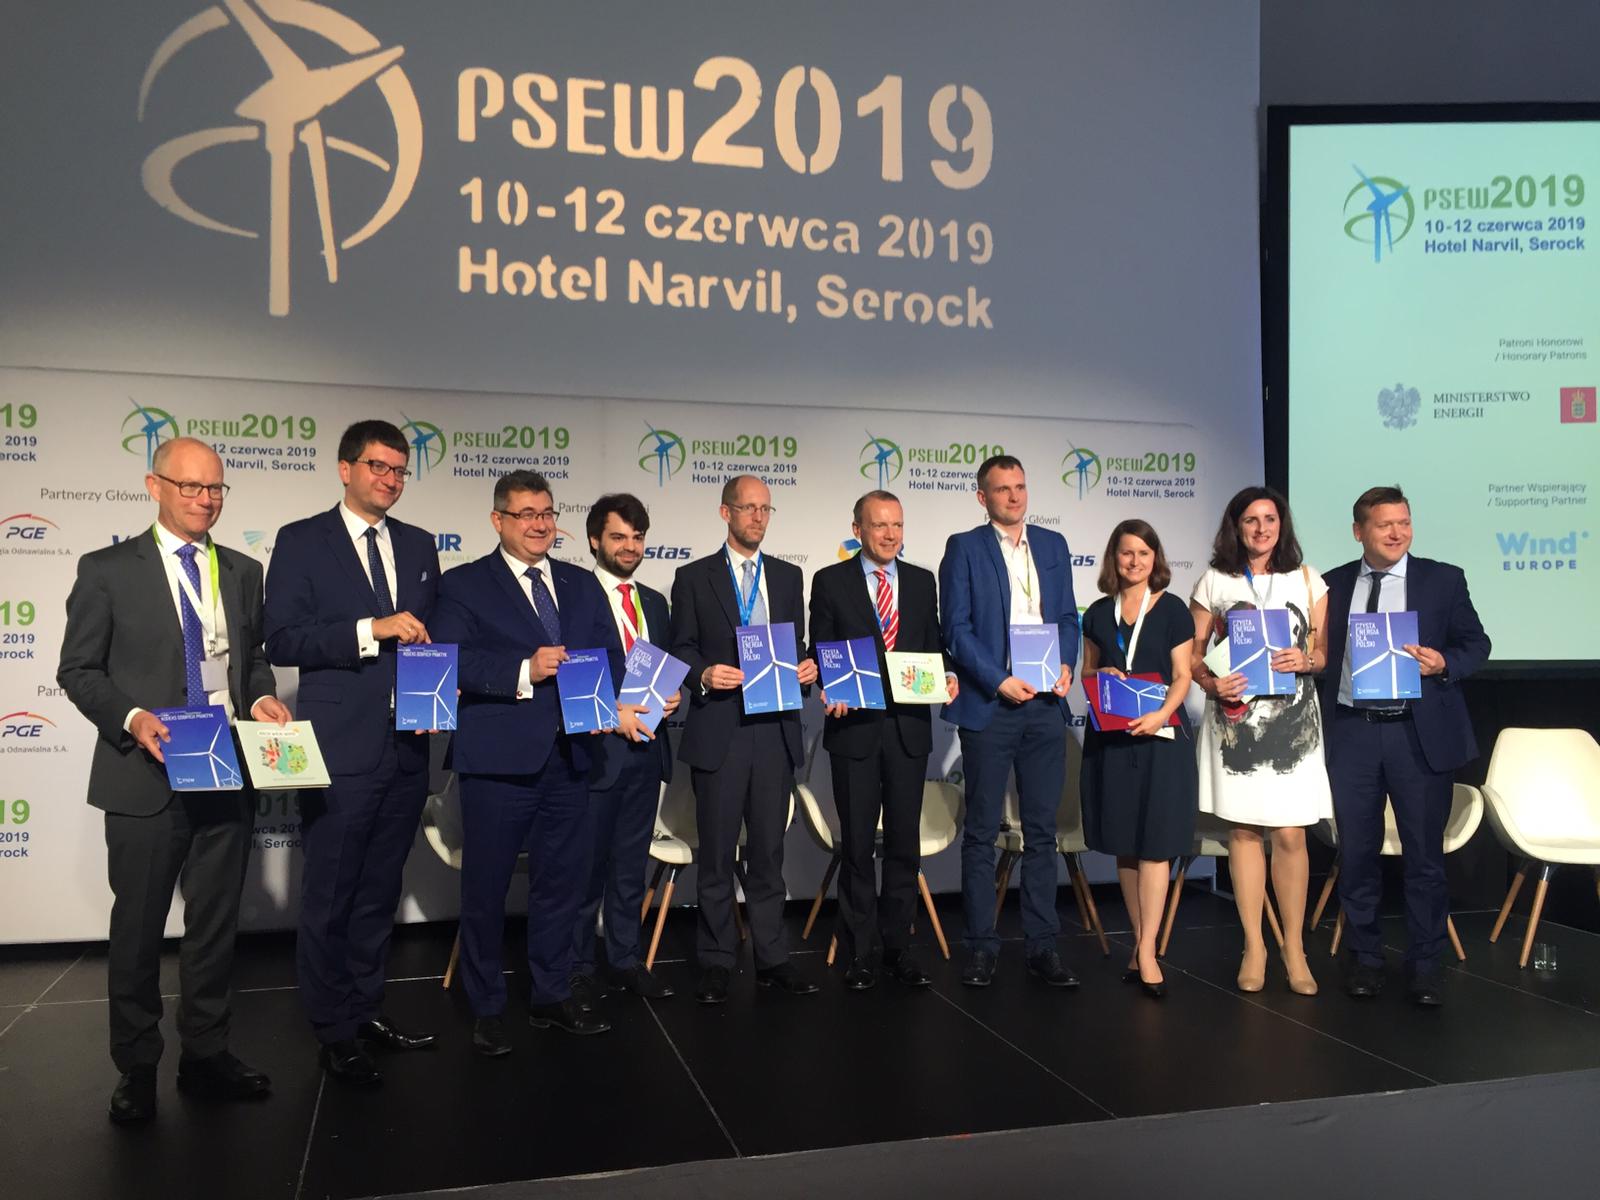 Zakończenie plenarnego panelu podczas PSEW 2019. Fot. BiznesAlert.pl